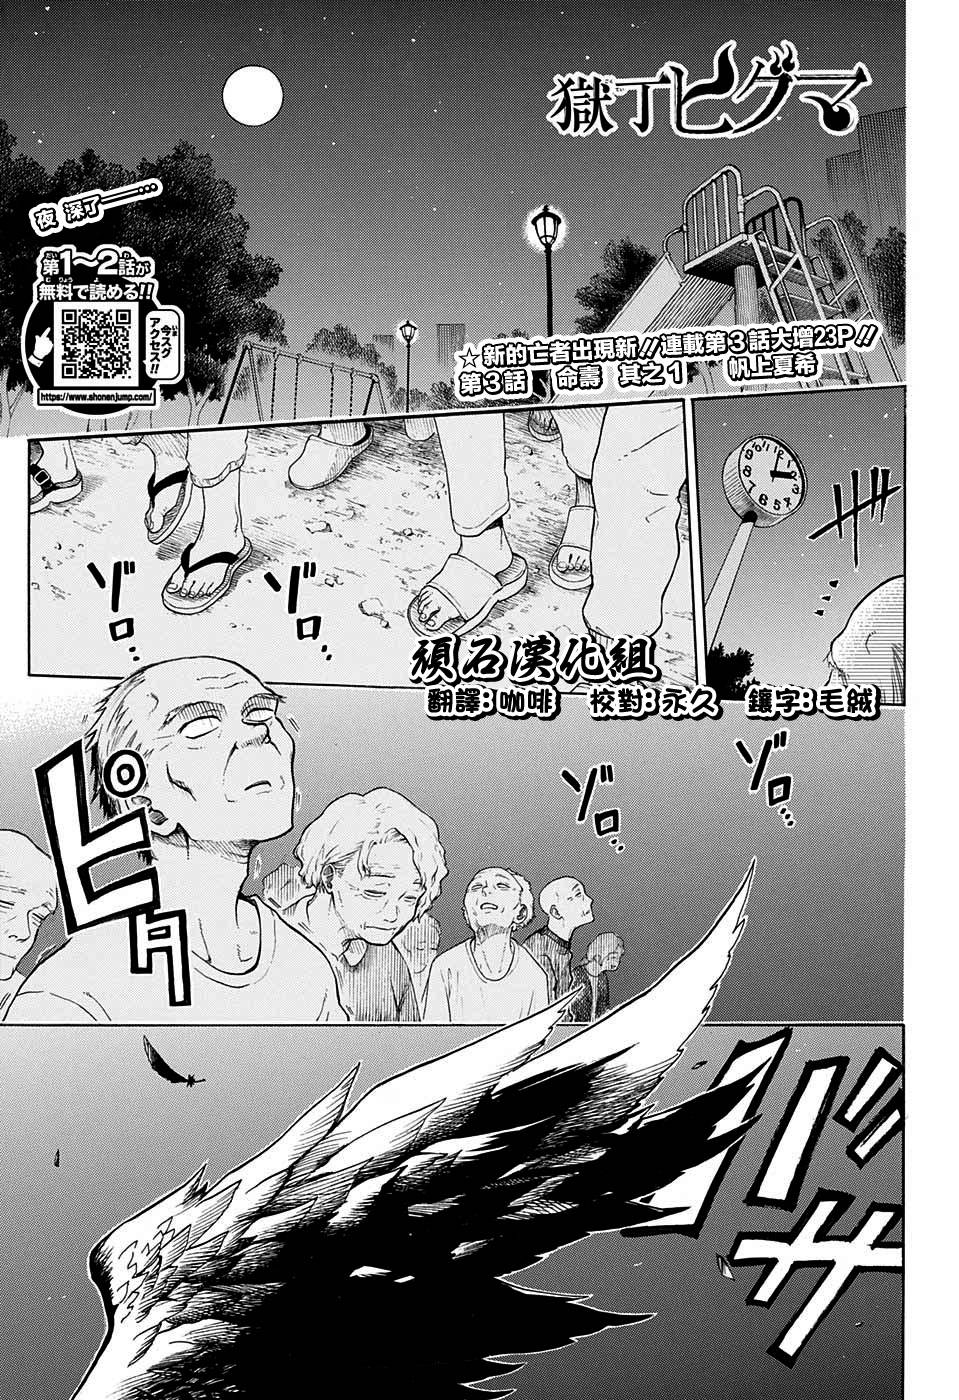 獄卒火久摩 火久摩之手第3話 漫畫版 Jkf 捷克論壇